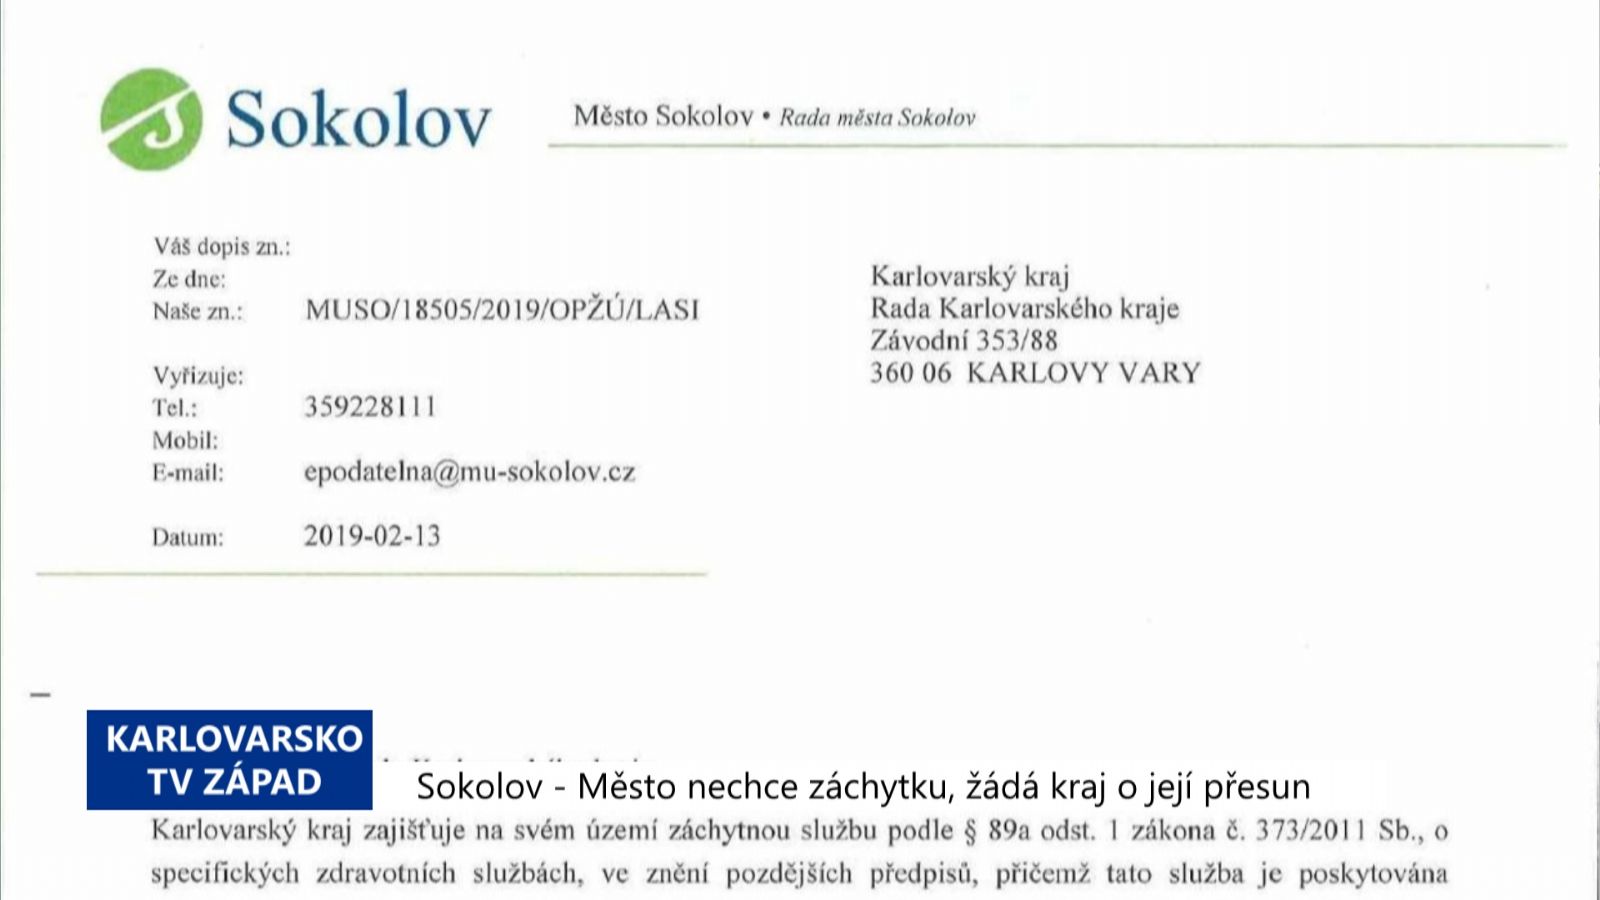 Sokolov: Město nechce záchytku, požádalo kraj o její přesun (TV Západ)